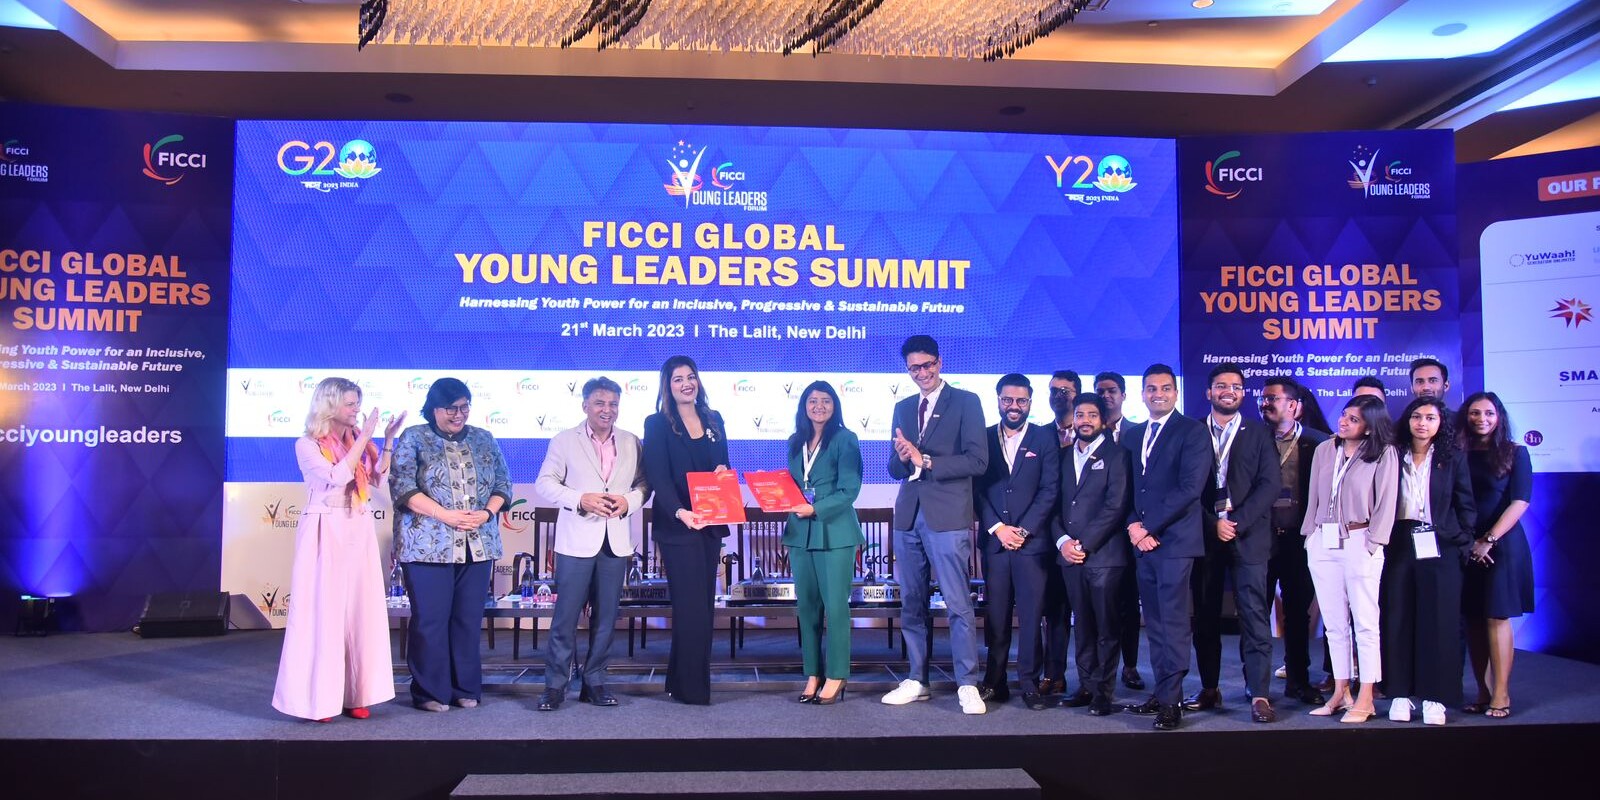 नेपालको सिएनआई युवा उद्यमी मञ्च र भारतको फिकी युवा नेतृत्व मञ्चबीच युवा उद्यमशीलता प्रबद्र्धन गर्न सहकार्य समझदारी 